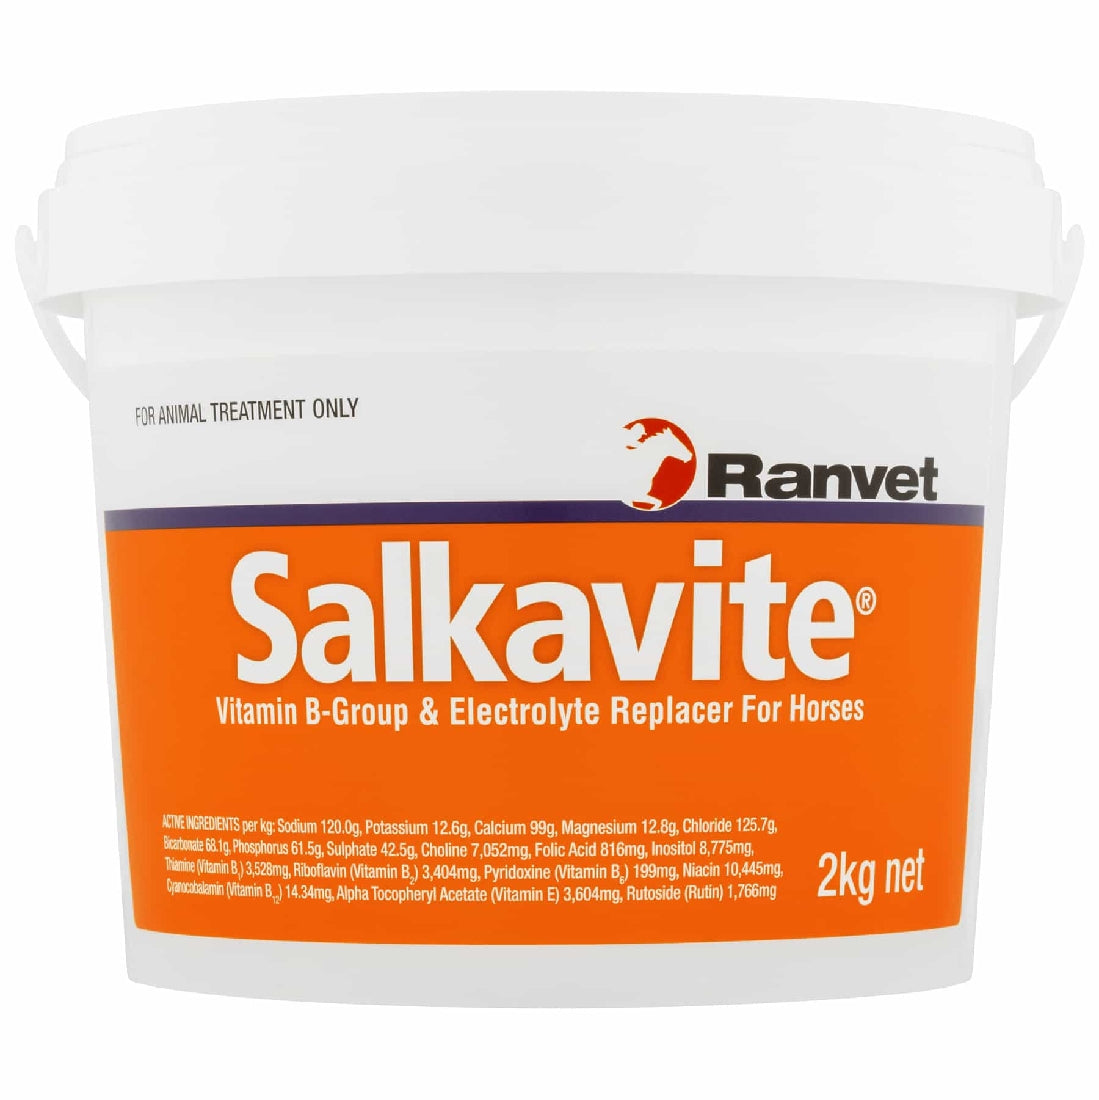 Salkavite Ranvet 2kg-Ascot Saddlery-The Equestrian